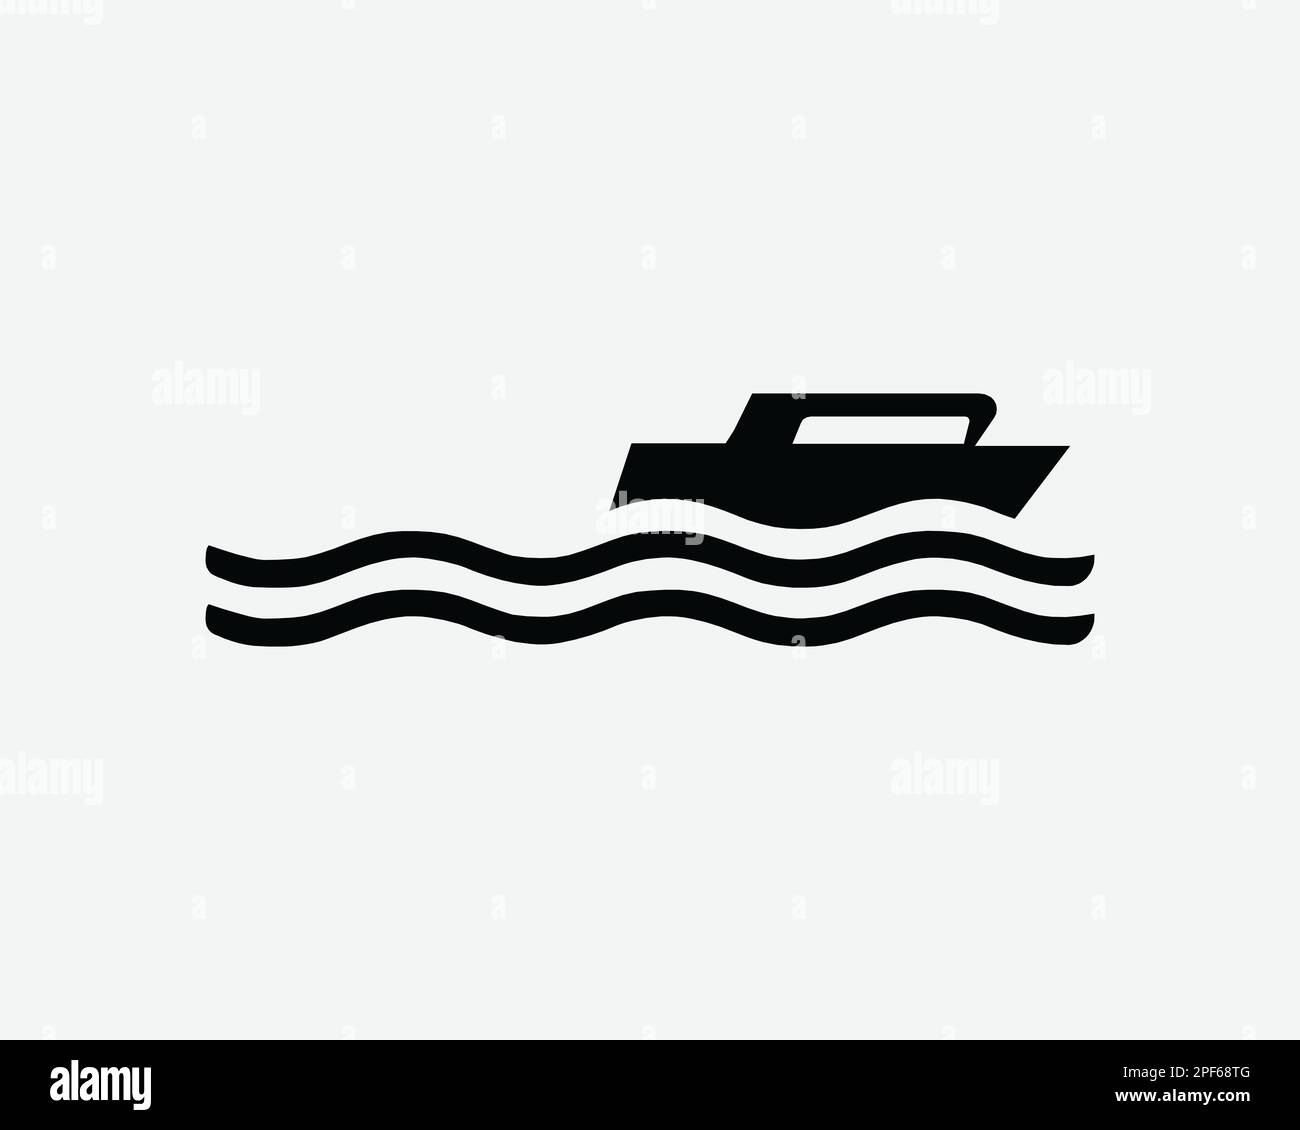 Schnellboot-Symbol Motorboot-Geschwindigkeit Motorboot Schiff Yachtvektor Schwarzweiß Silhouettensymbol Schild Grafik Clipart Artwork Illustration Piktogramm Stock Vektor